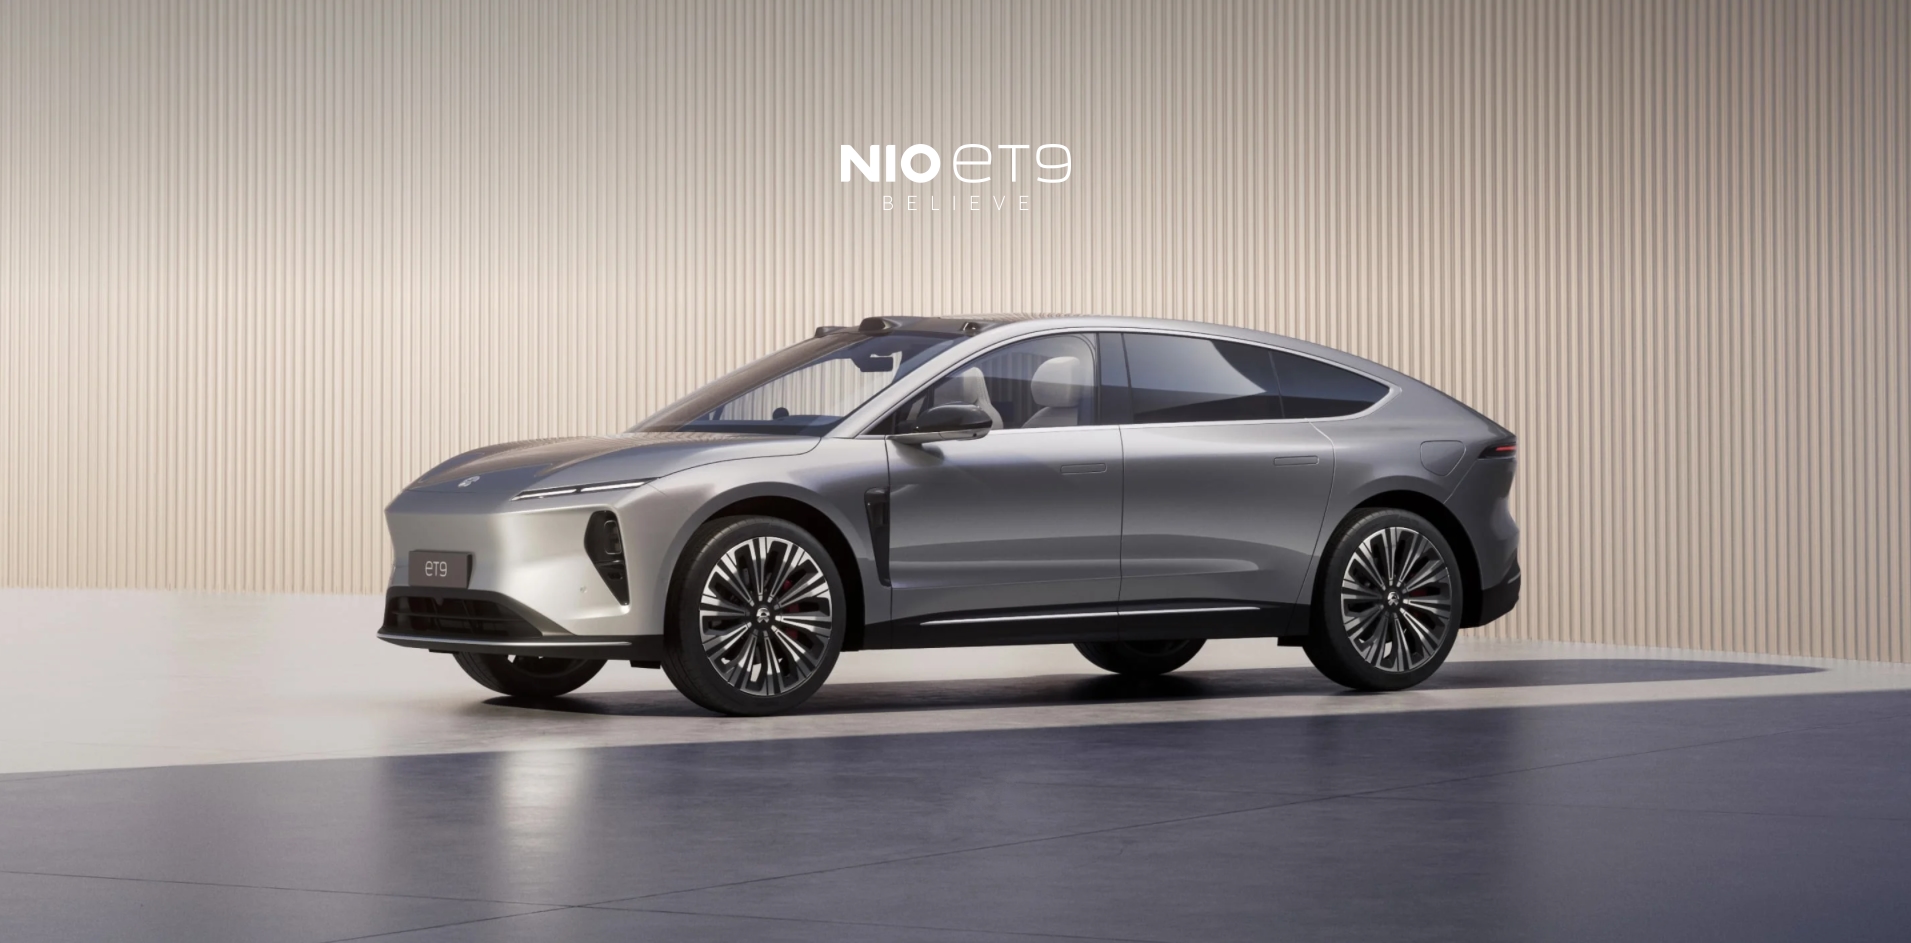 Um mit dem Mercedes-Benz Maybach zu konkurrieren: Nio hat das Premium-Elektroauto ET9 für 112.000 Dollar vorgestellt